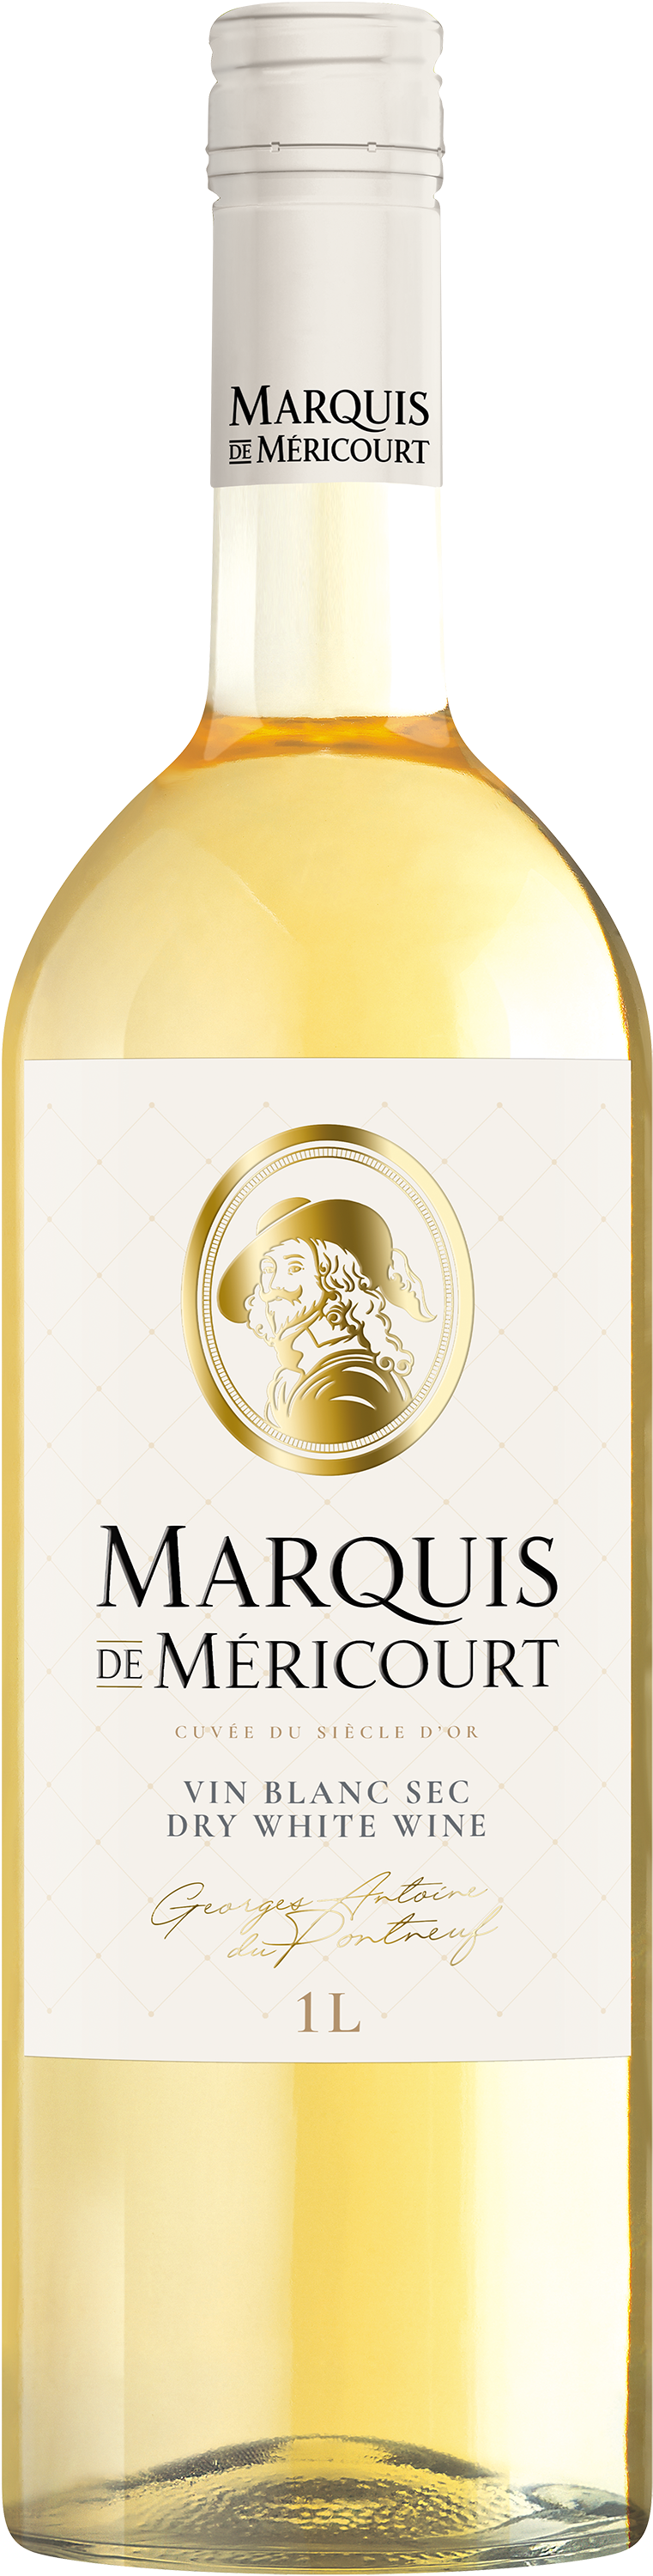 Marquis de Méricourt Vin blanc sec